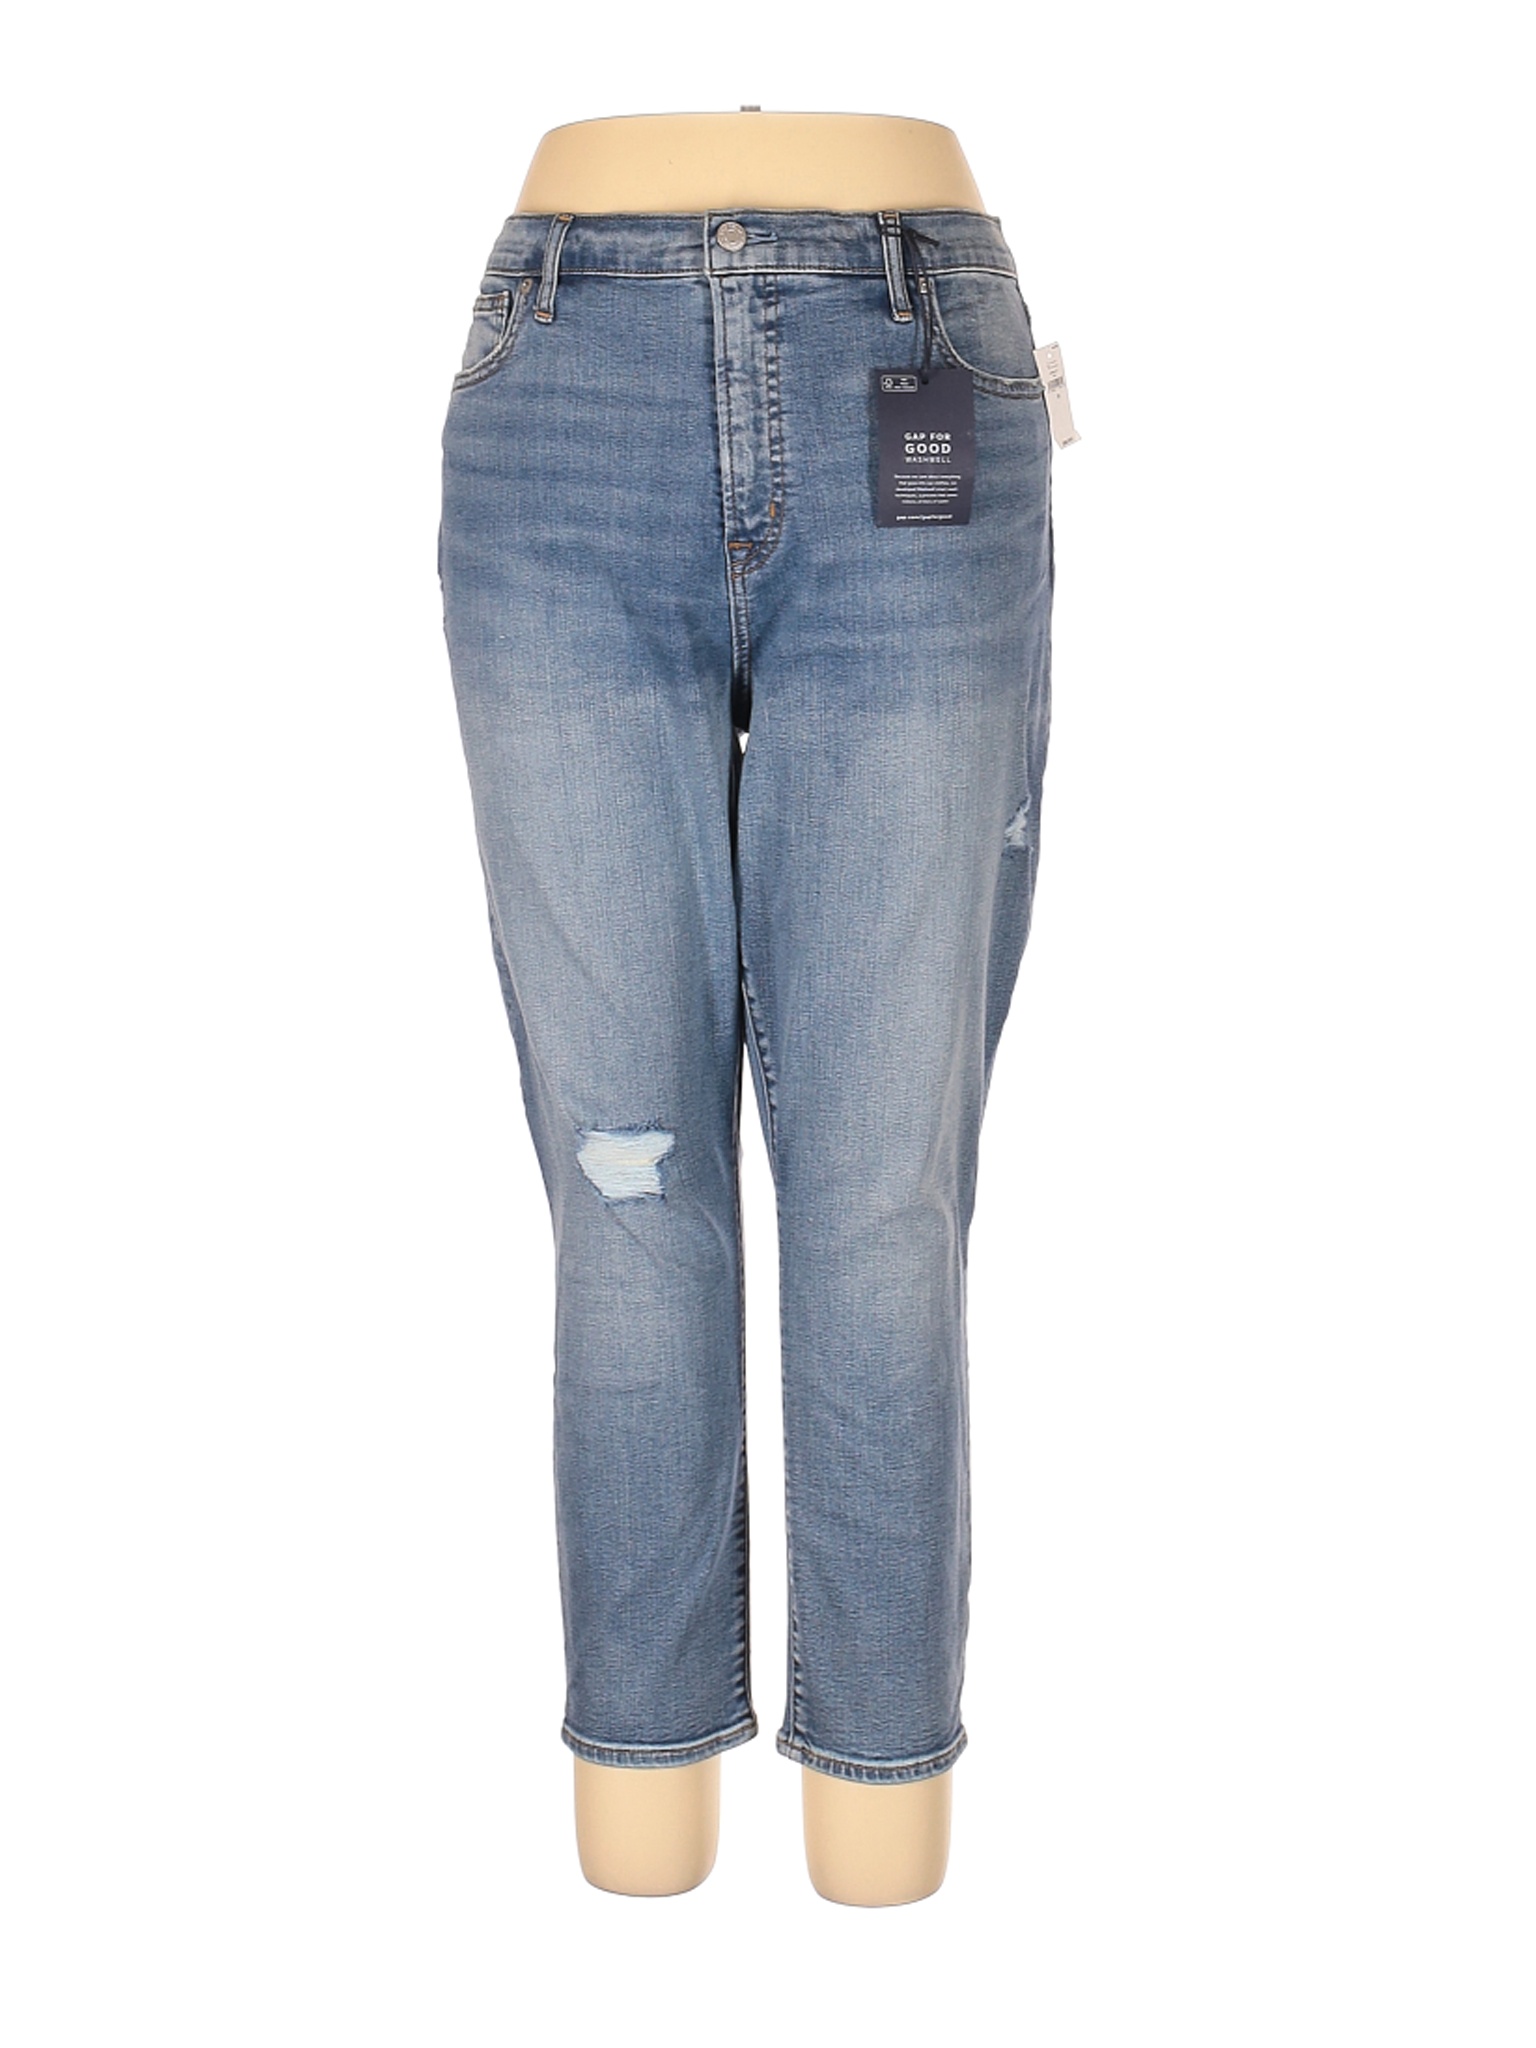 NWT Gap Women Blue Jeans 34W | eBay